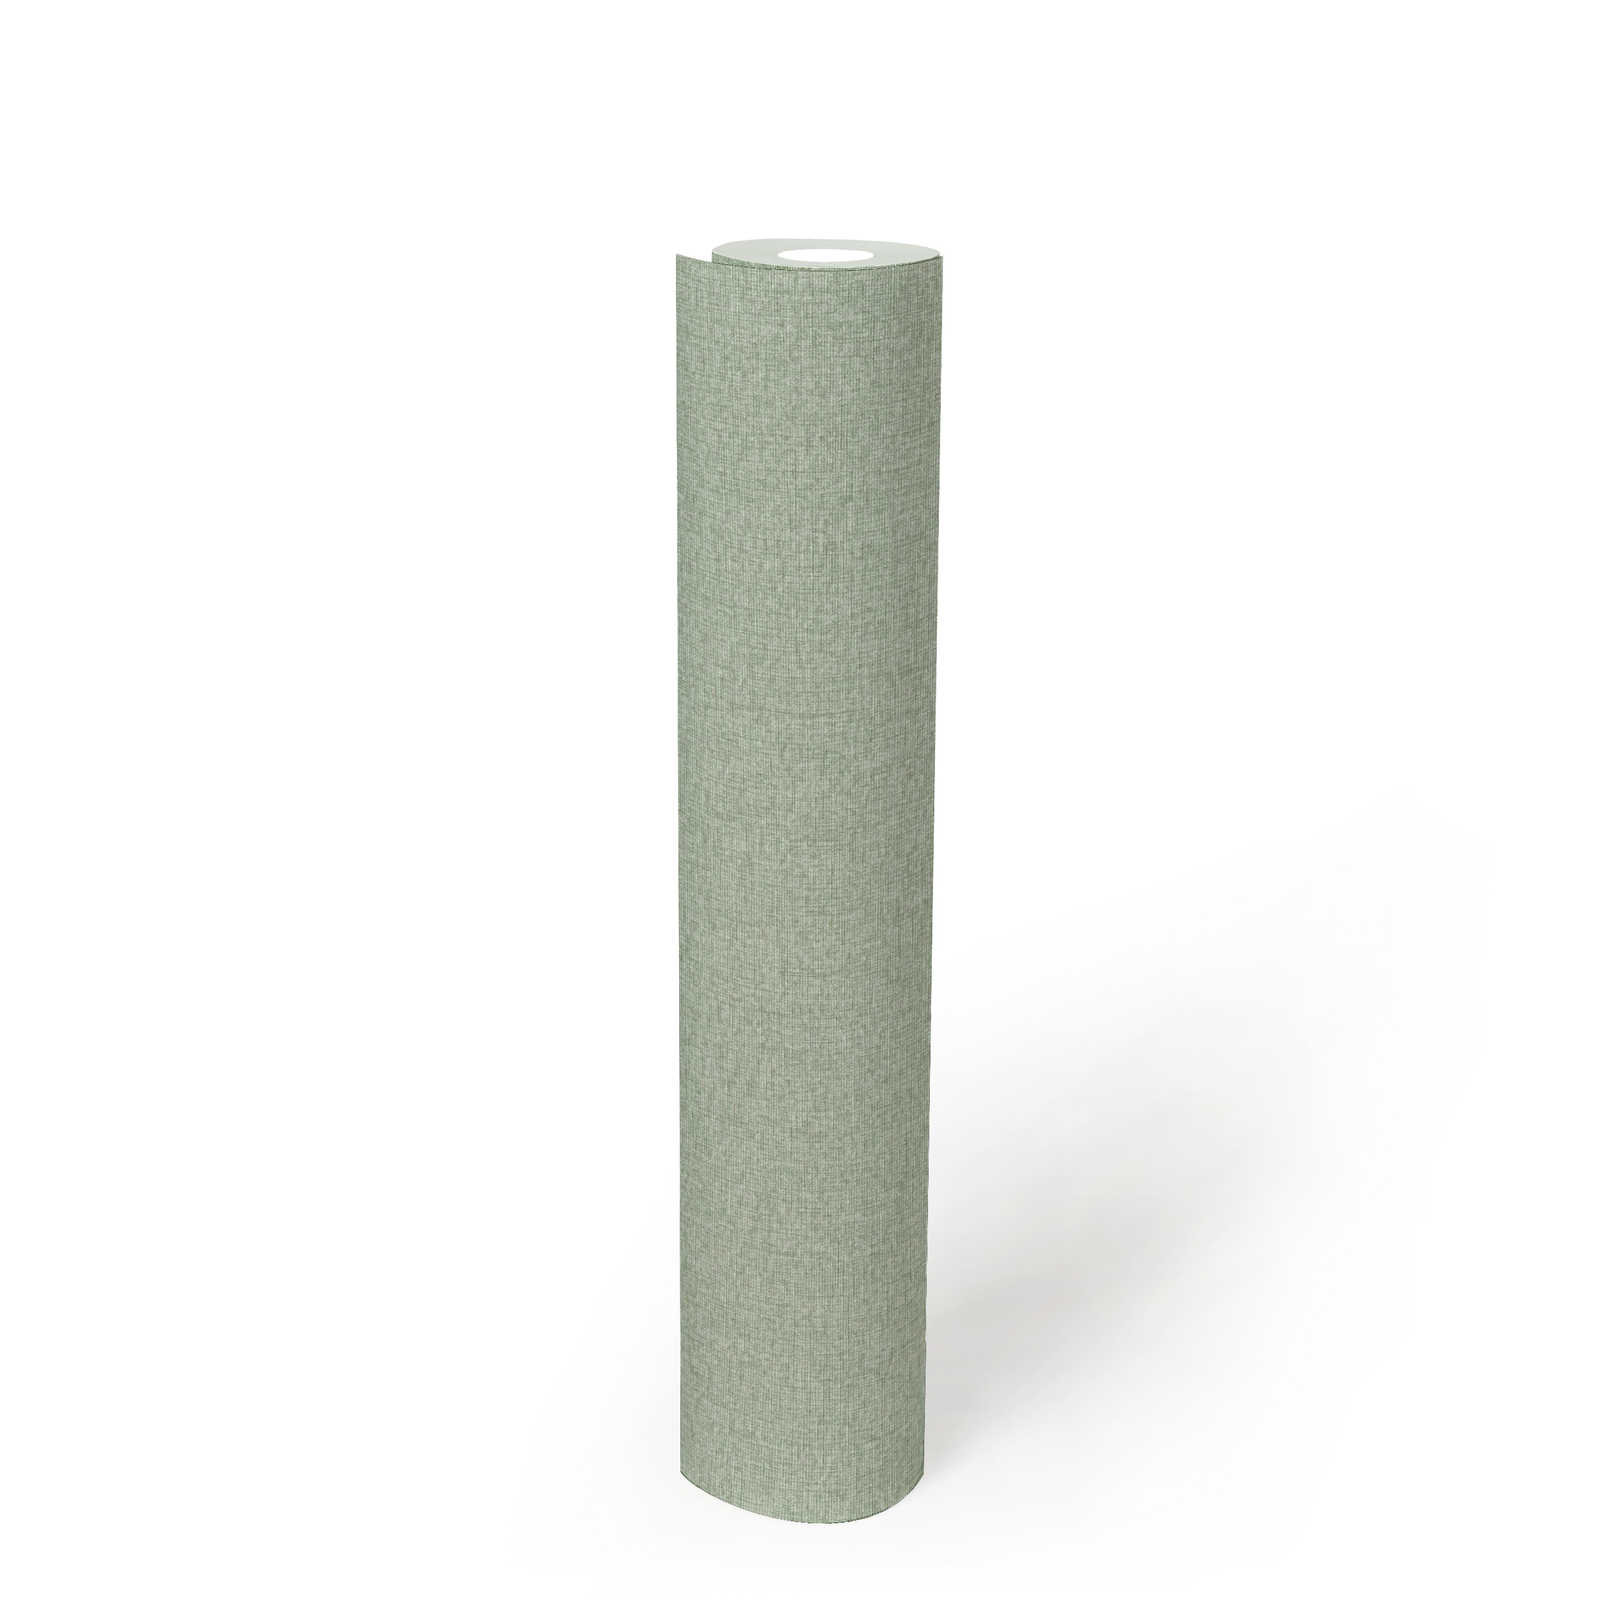             papier peint en papier uni aspect tissé avec légère structure, mat - vert
        